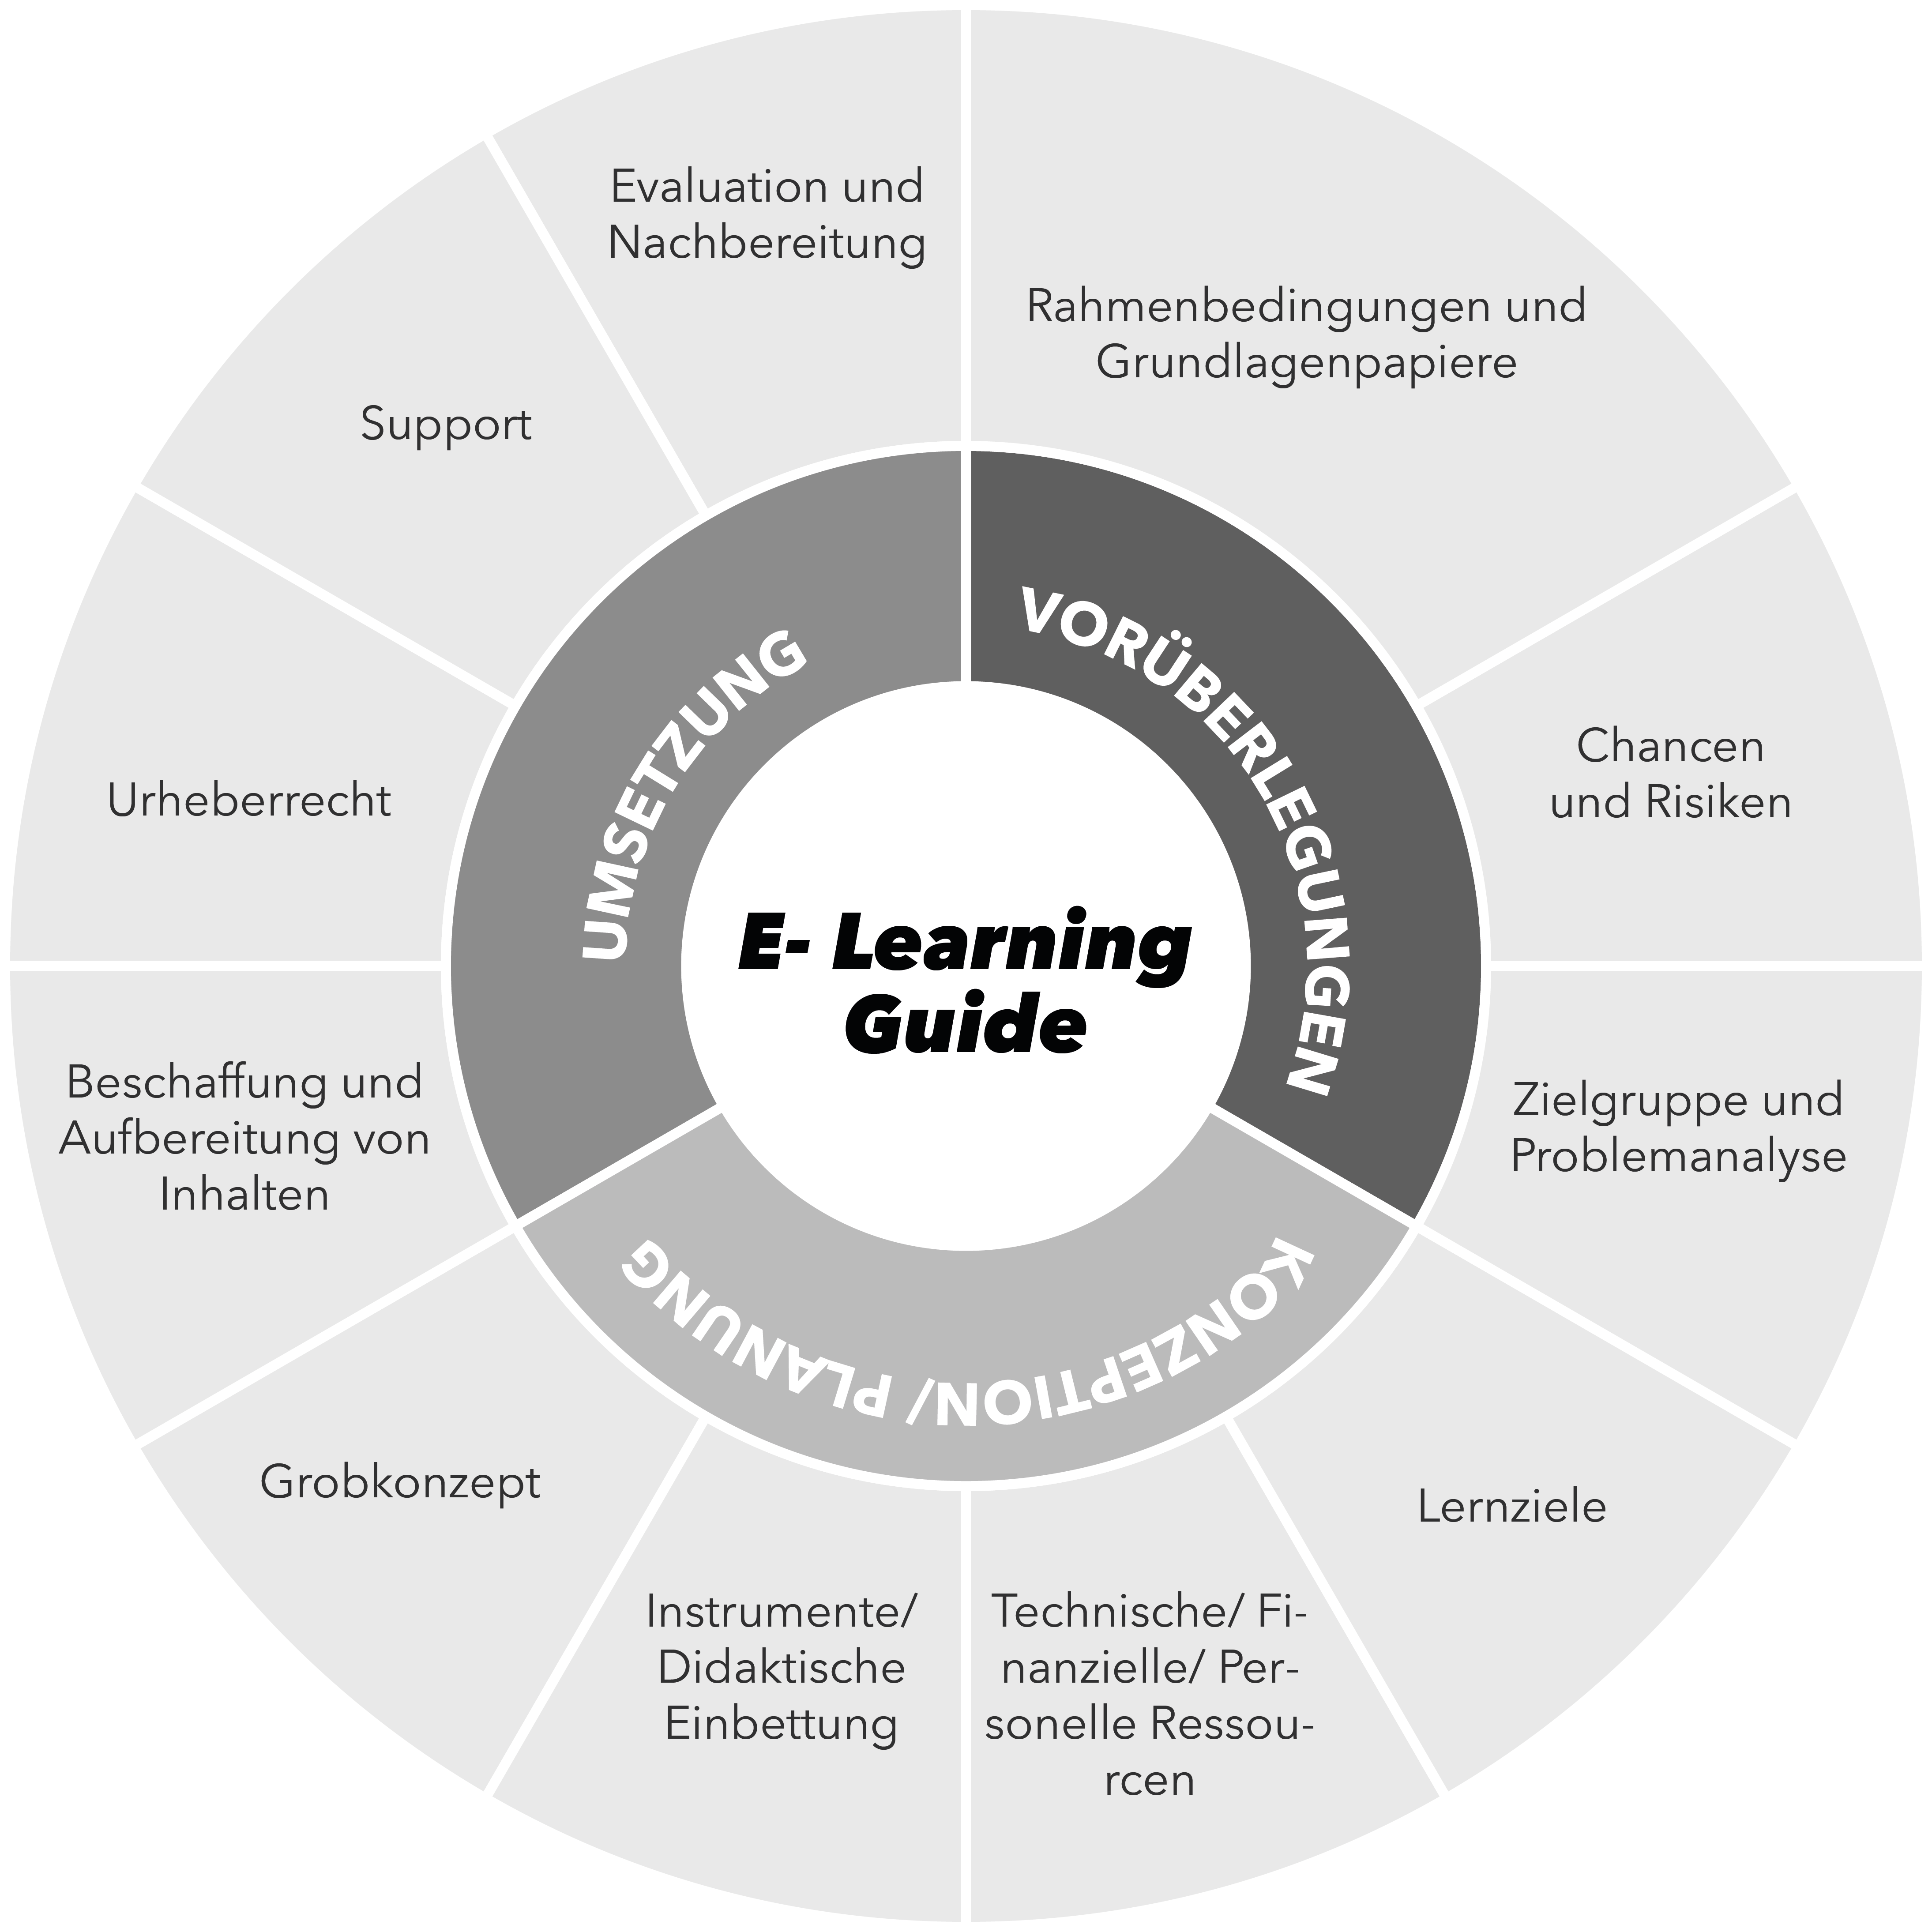 Die drei Schritte der E-Learning Guide